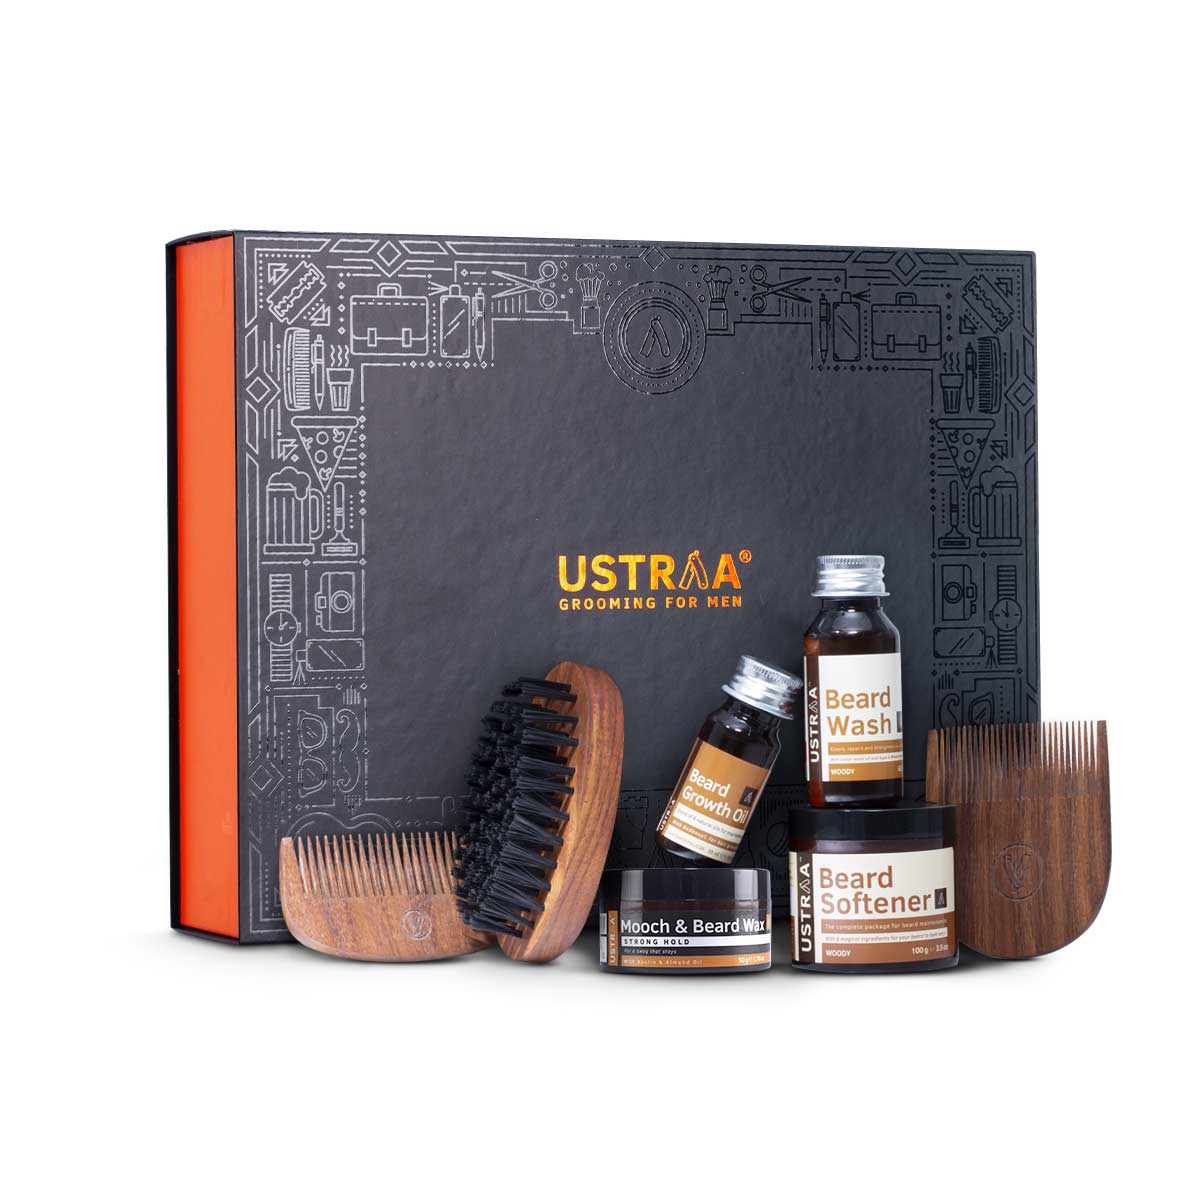 Ustraa Beard Lover Pack for Men: Beard Oil, Beard Softener, Beard Wash, Beard Comb Set, Beard & Mooch Styling Wax